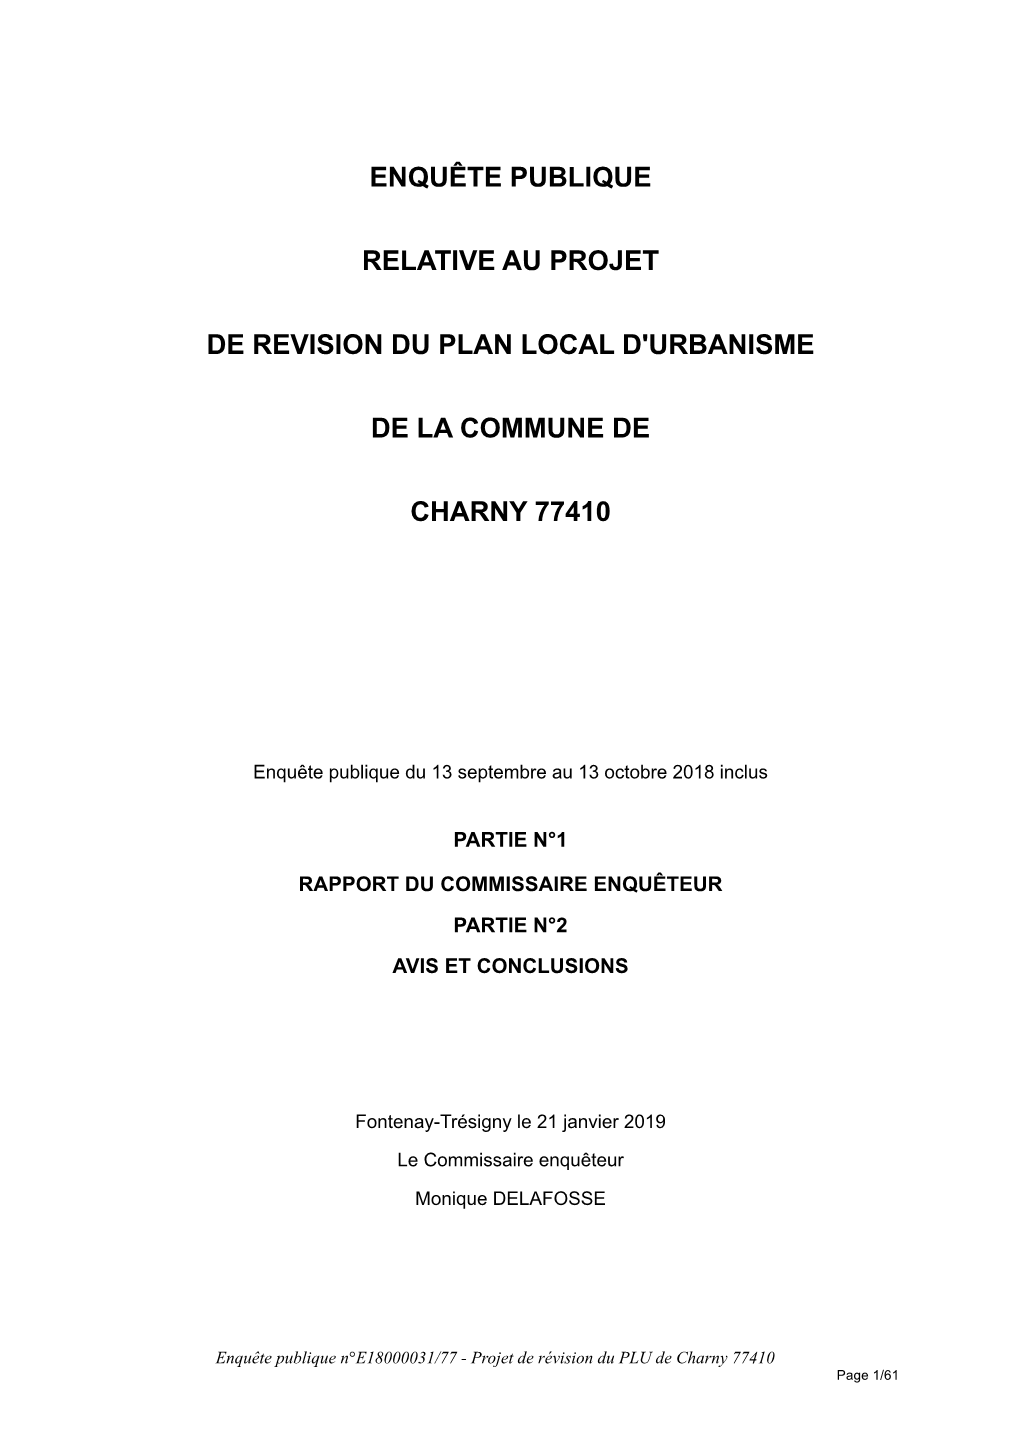 Enquête Publique Relative Au Projet De Revision Du Plan Local D'urbanisme De La Commune De Charny 77410